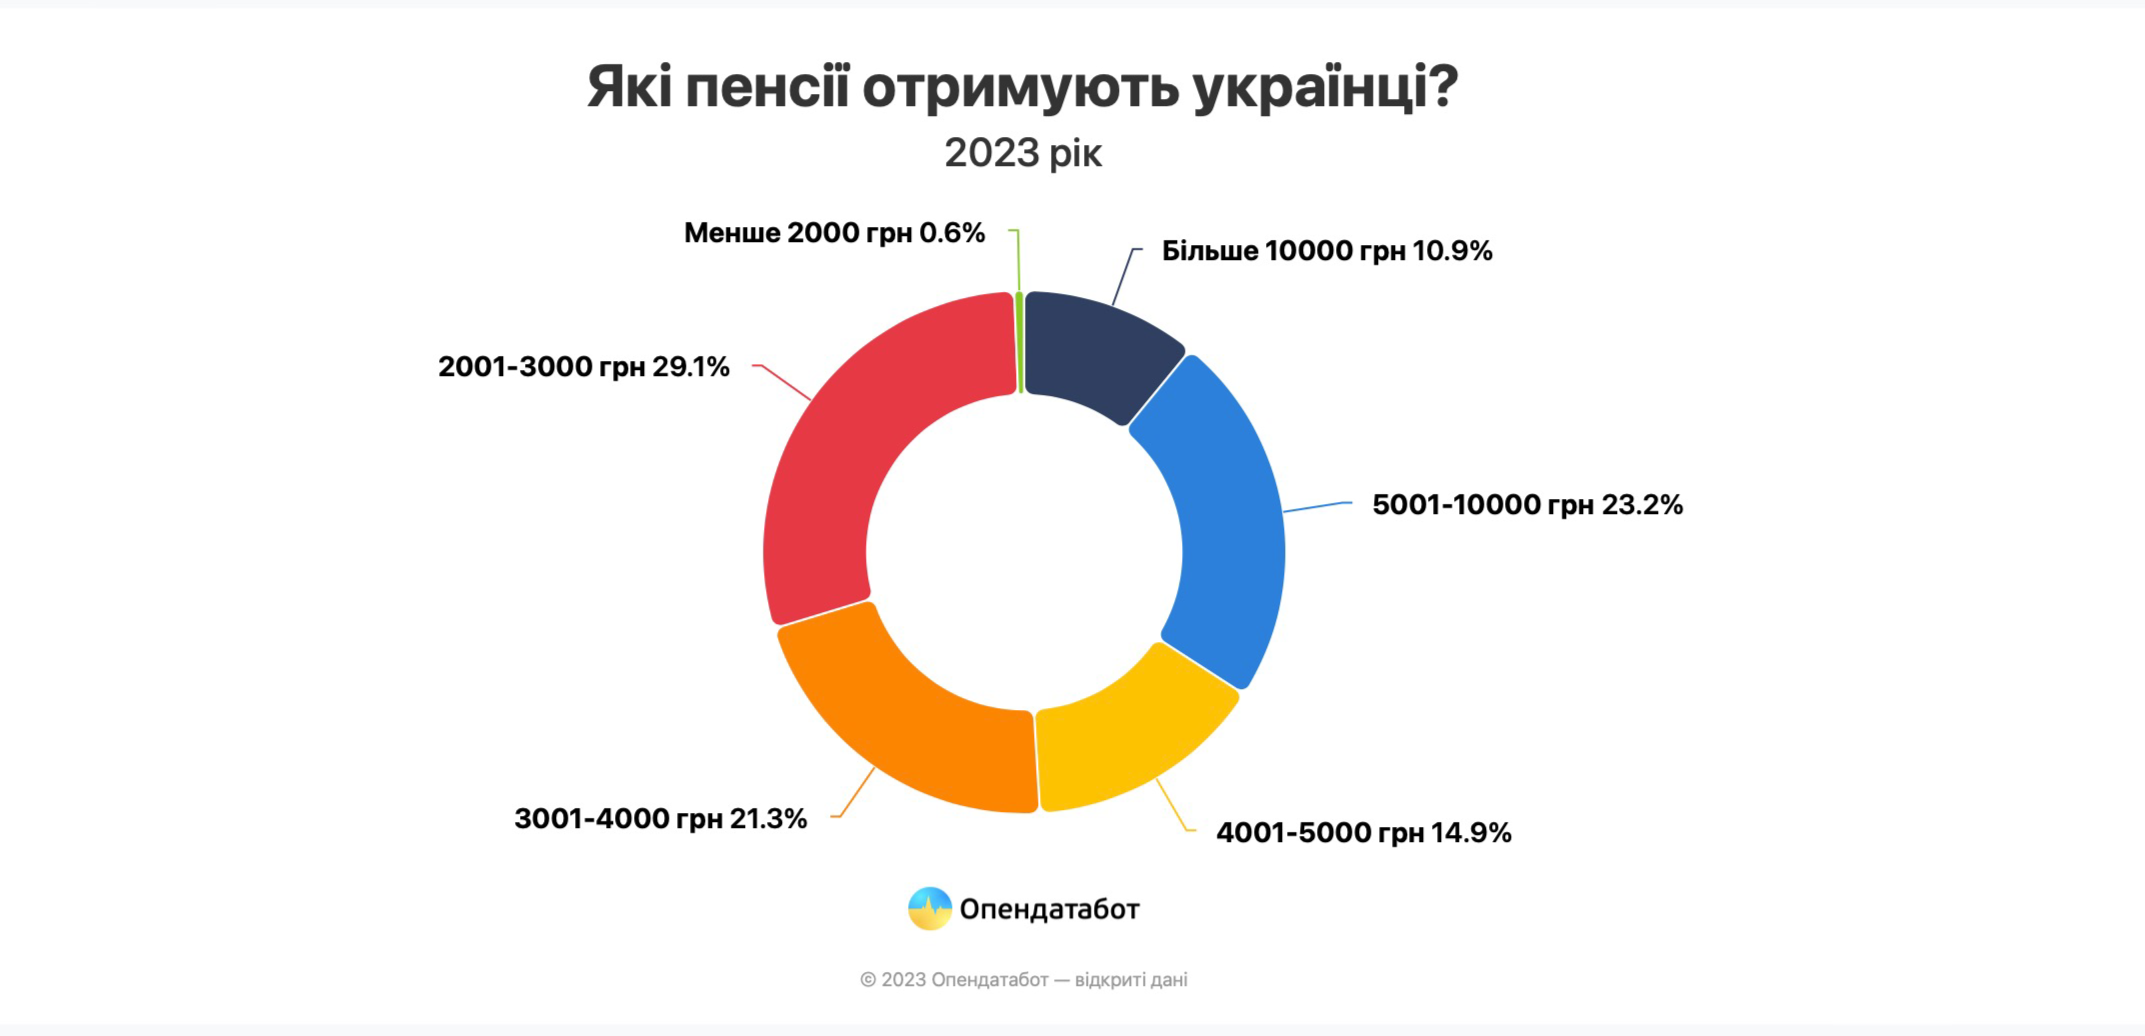 Середня пенсія в Україні у 2024 році складає 5385 грн